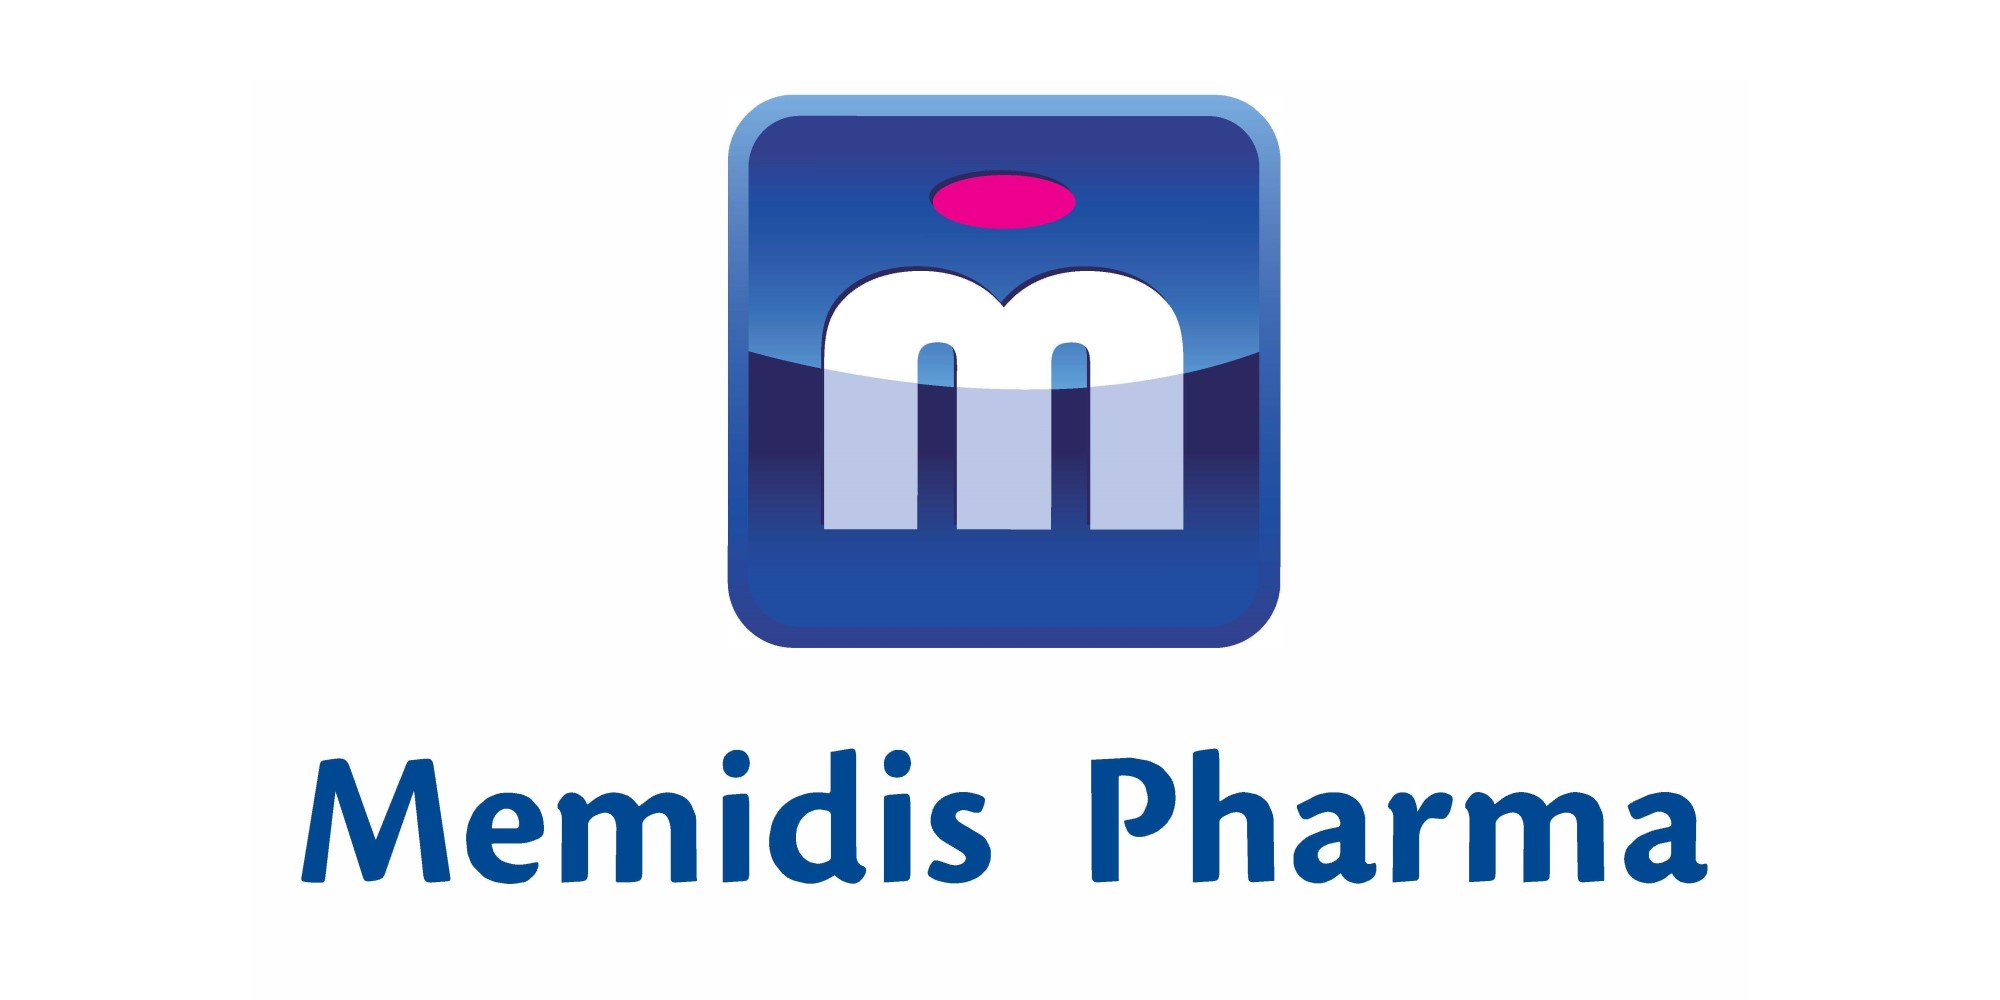 Memidis Pharma